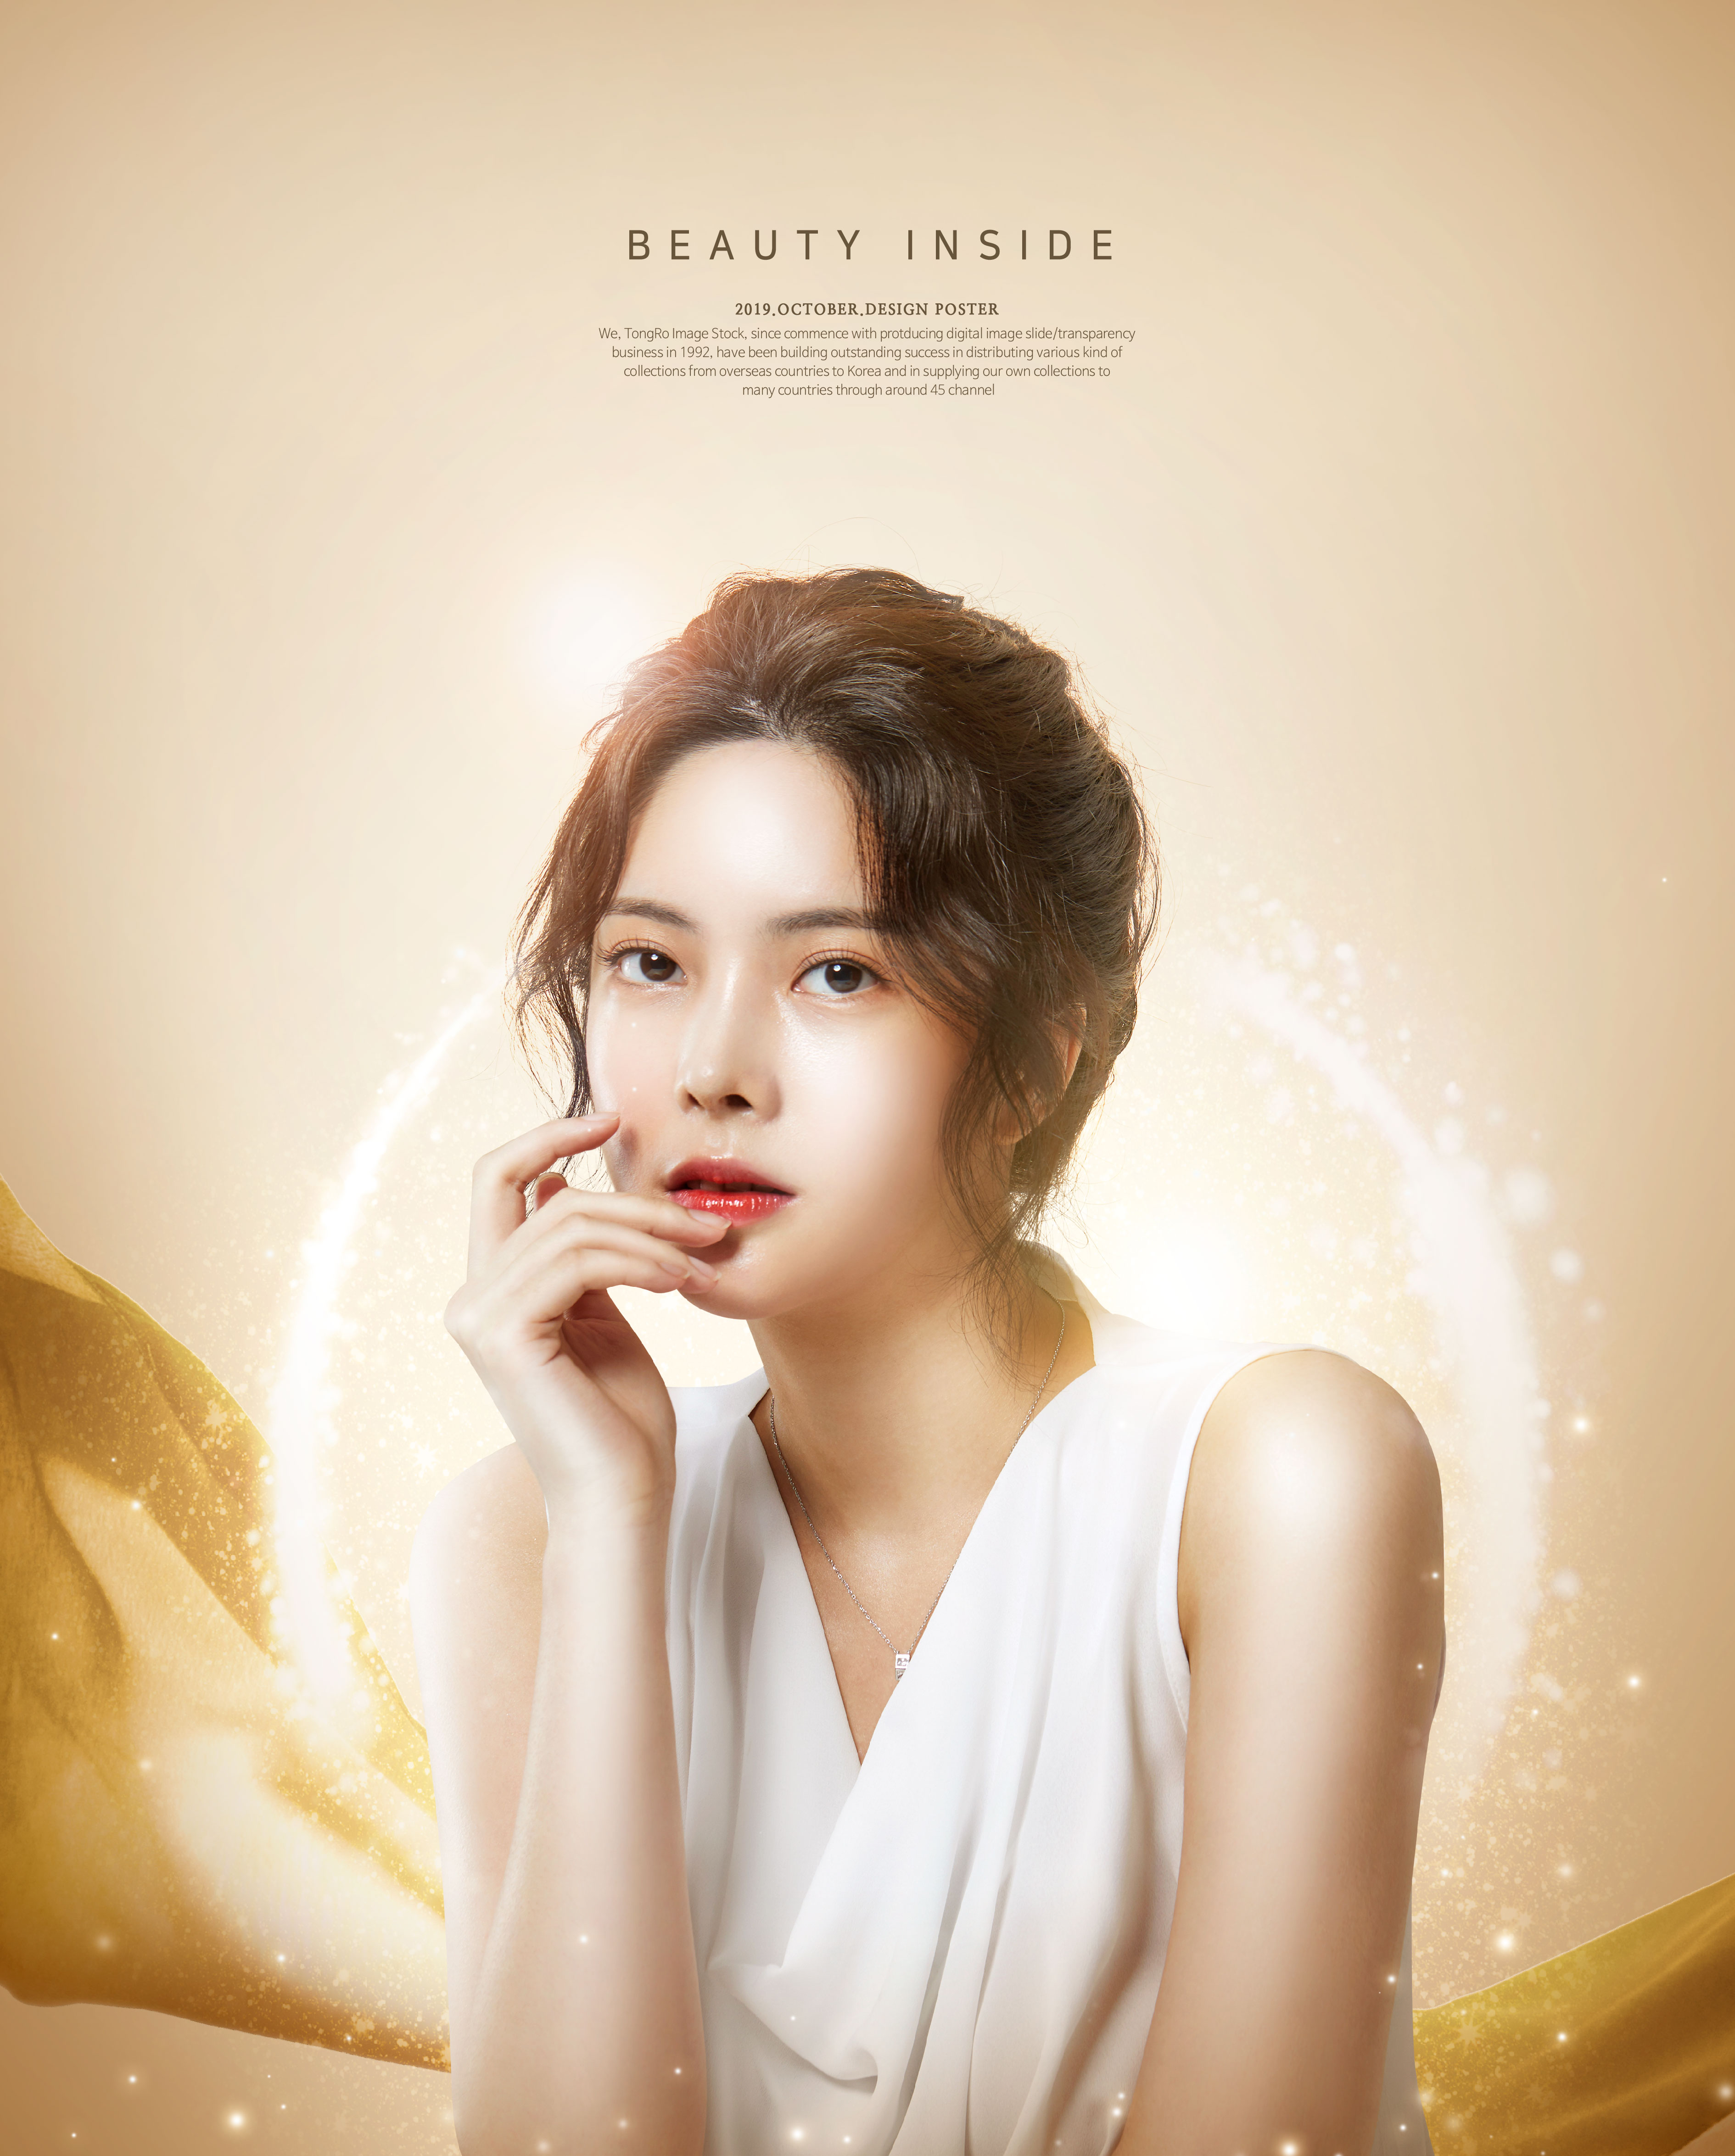 韩国气质美女美容化妆品广告海报模板套装[PSD]插图(1)